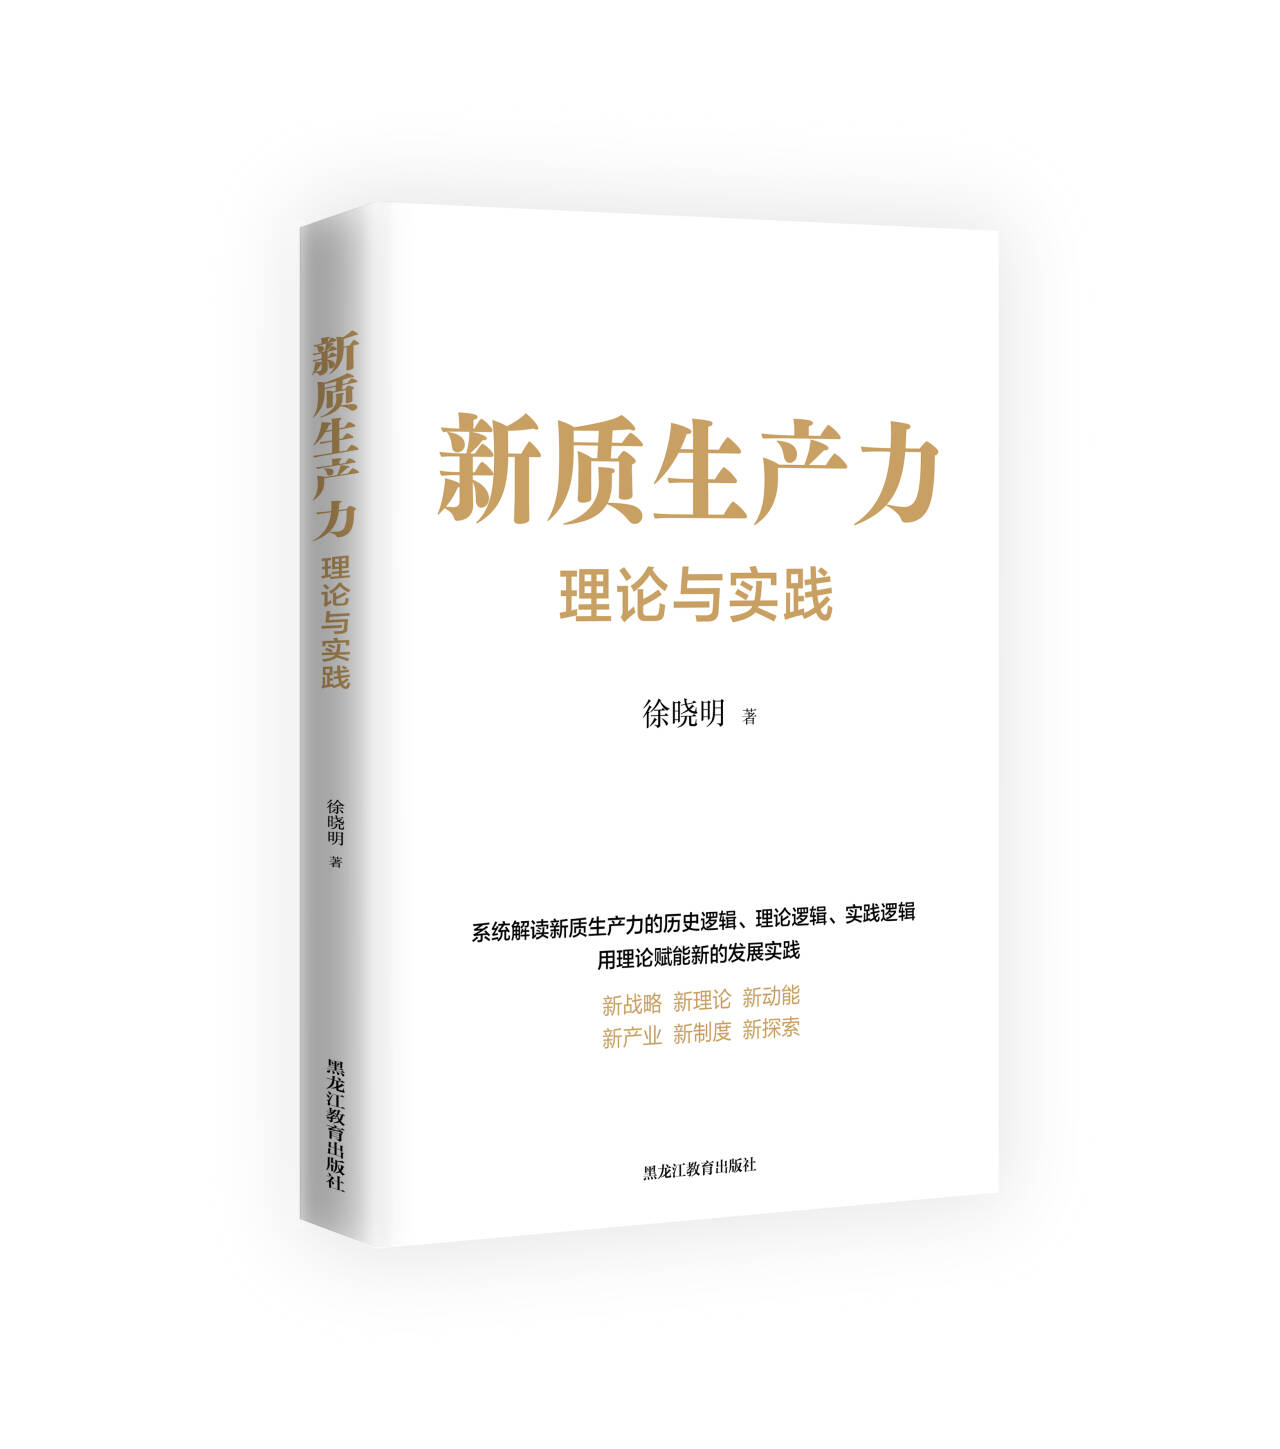 深度的阐述  可贵的实践  ——读中央党校徐晓明研究员的著作《新质生产力：理论与实践》